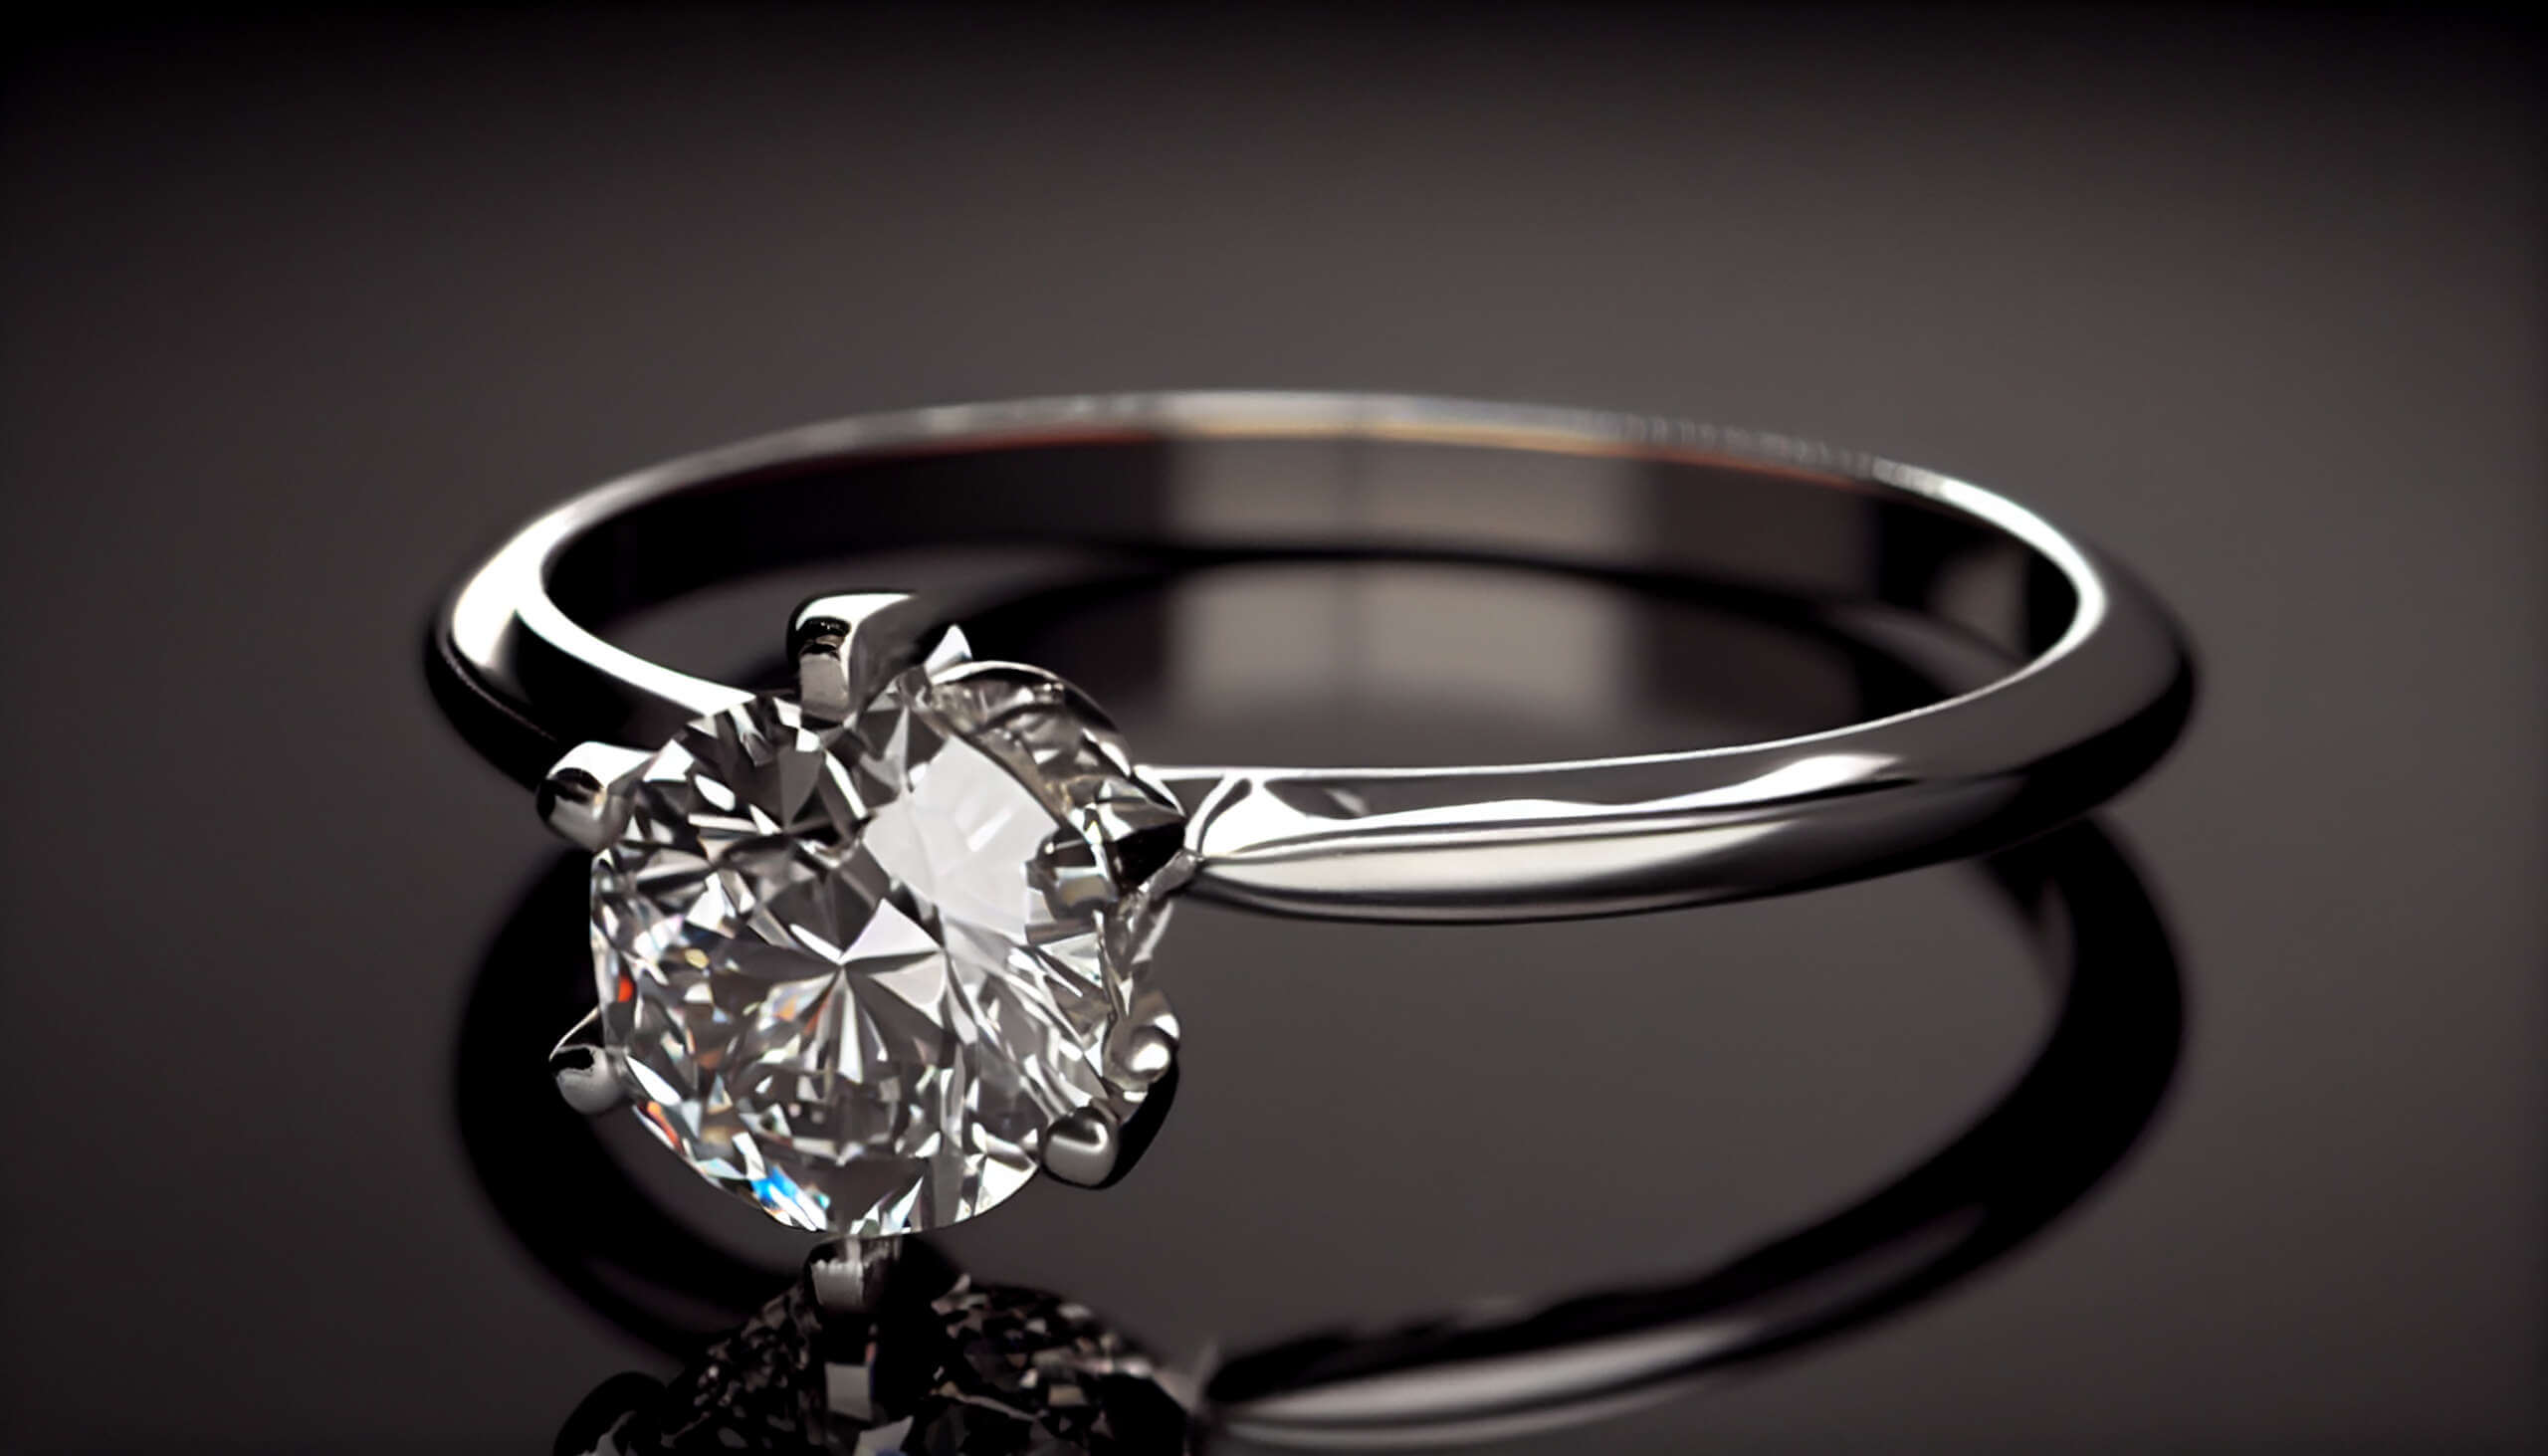 Come valutare un diamante? 3 cose da sapere per una valutazione sicura